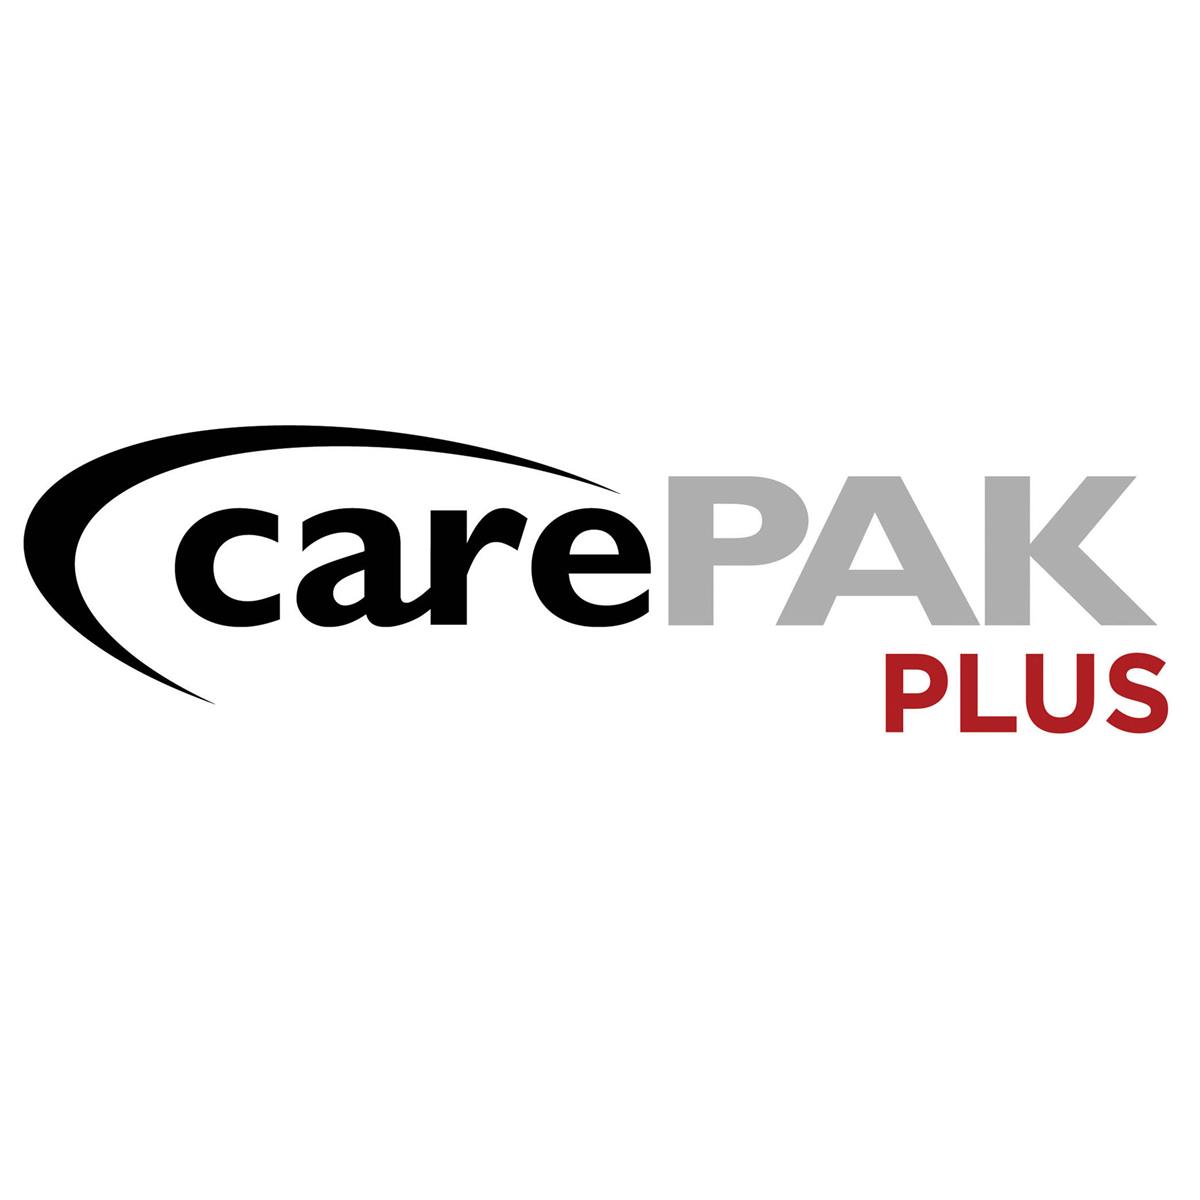 Canon CarePAK PLUS 2 Year Plan for EOS DSLR & Mirrorless Cameras (Up to $1500) -  9620B011AA